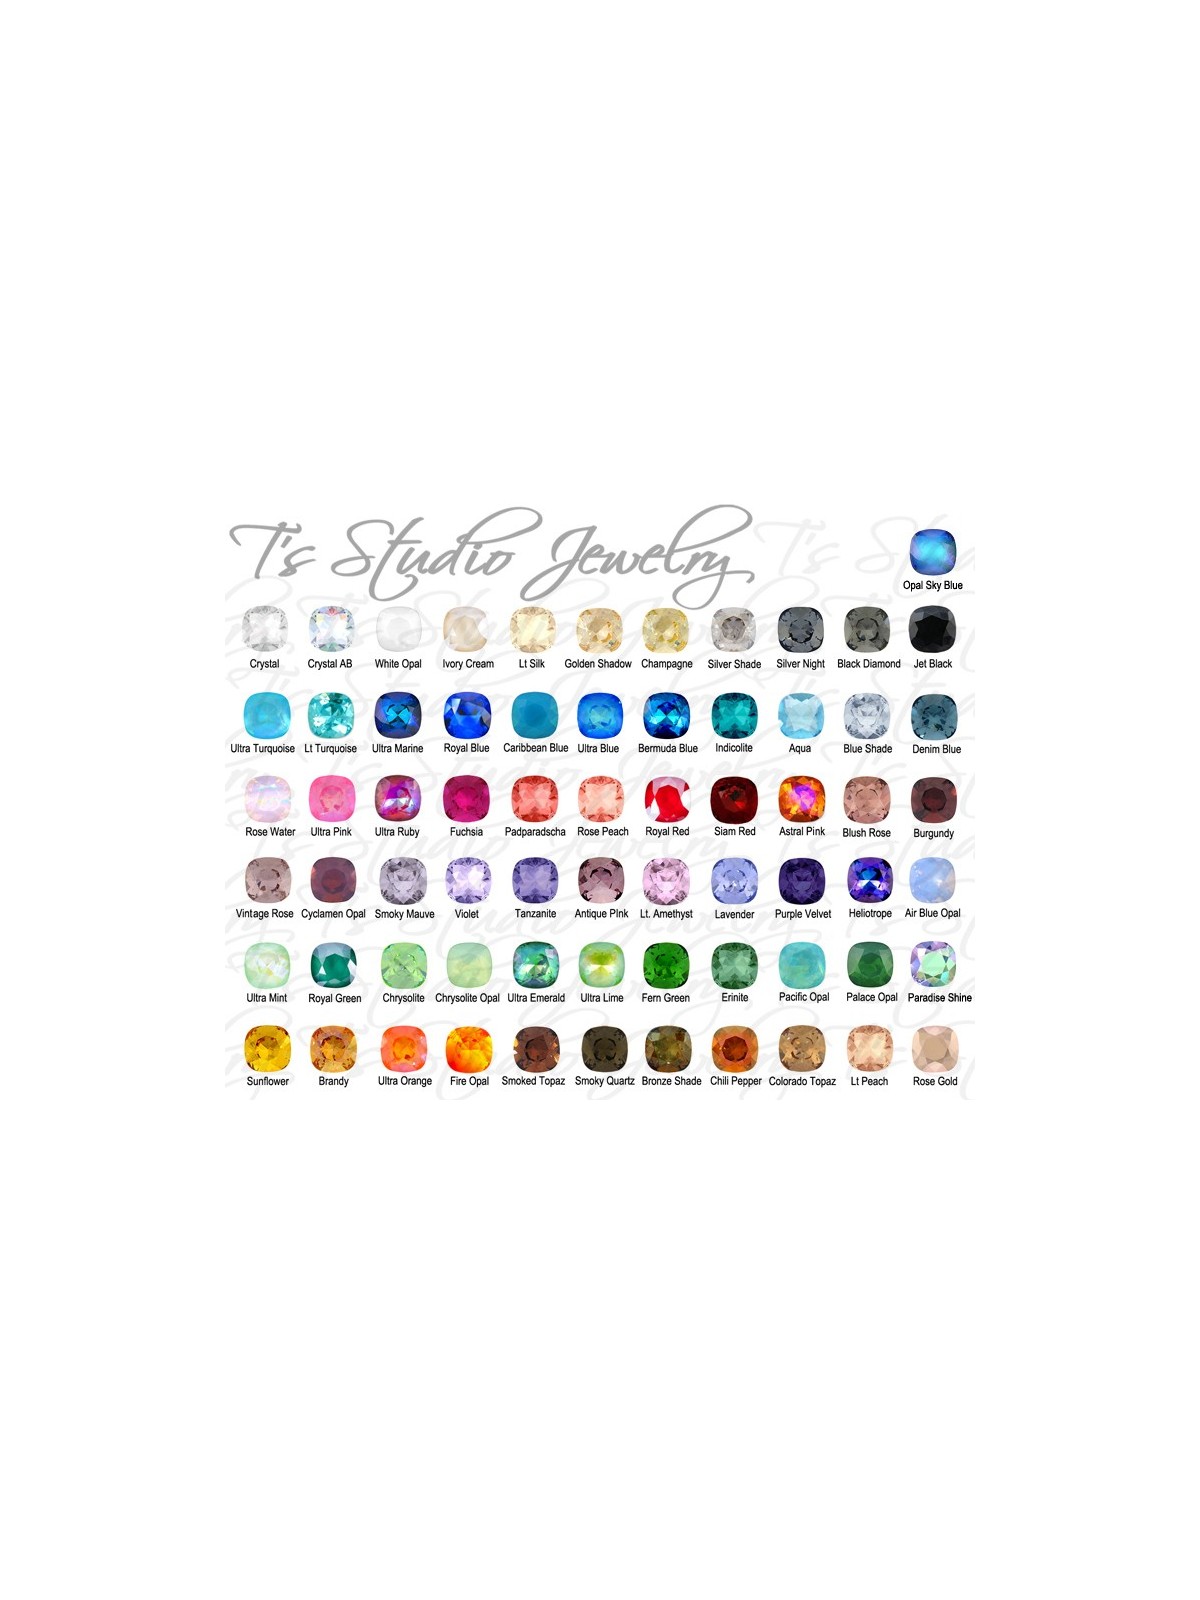 Rainbow Cushion Cut Swarovski Crystal Cufflinks - Choose your Color